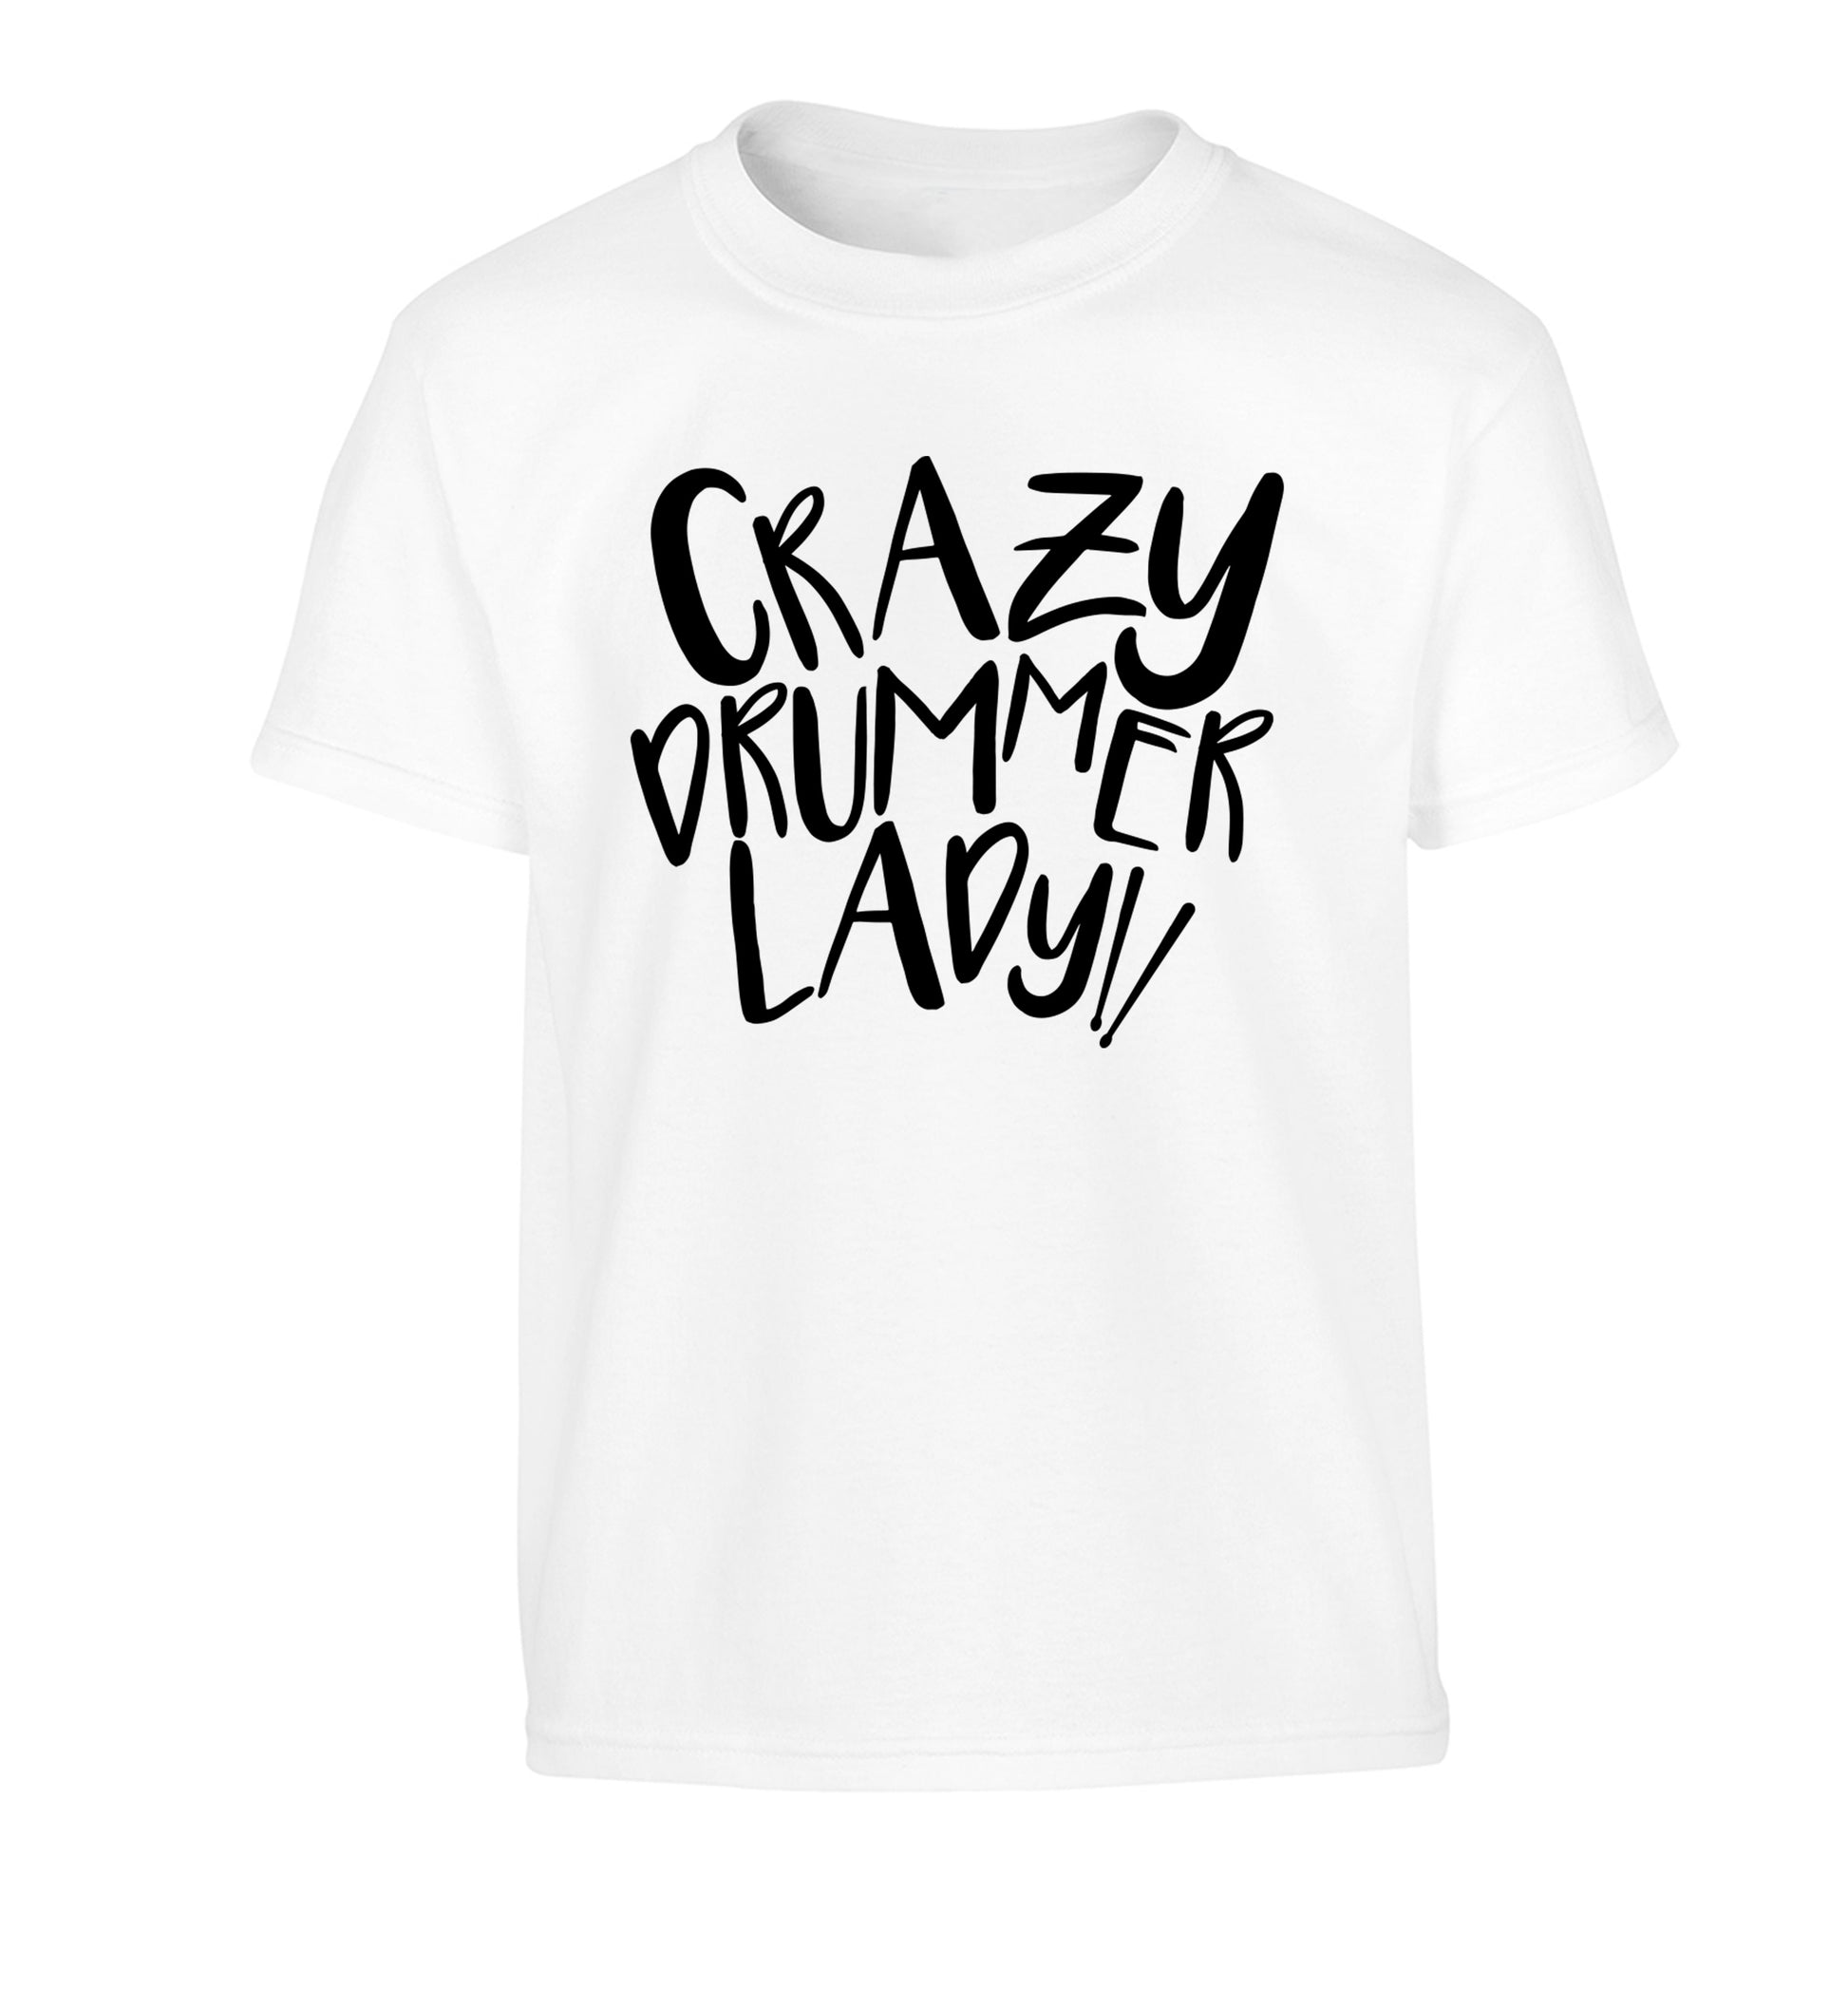 Crazy drummer lady Children's white Tshirt 12-14 Years